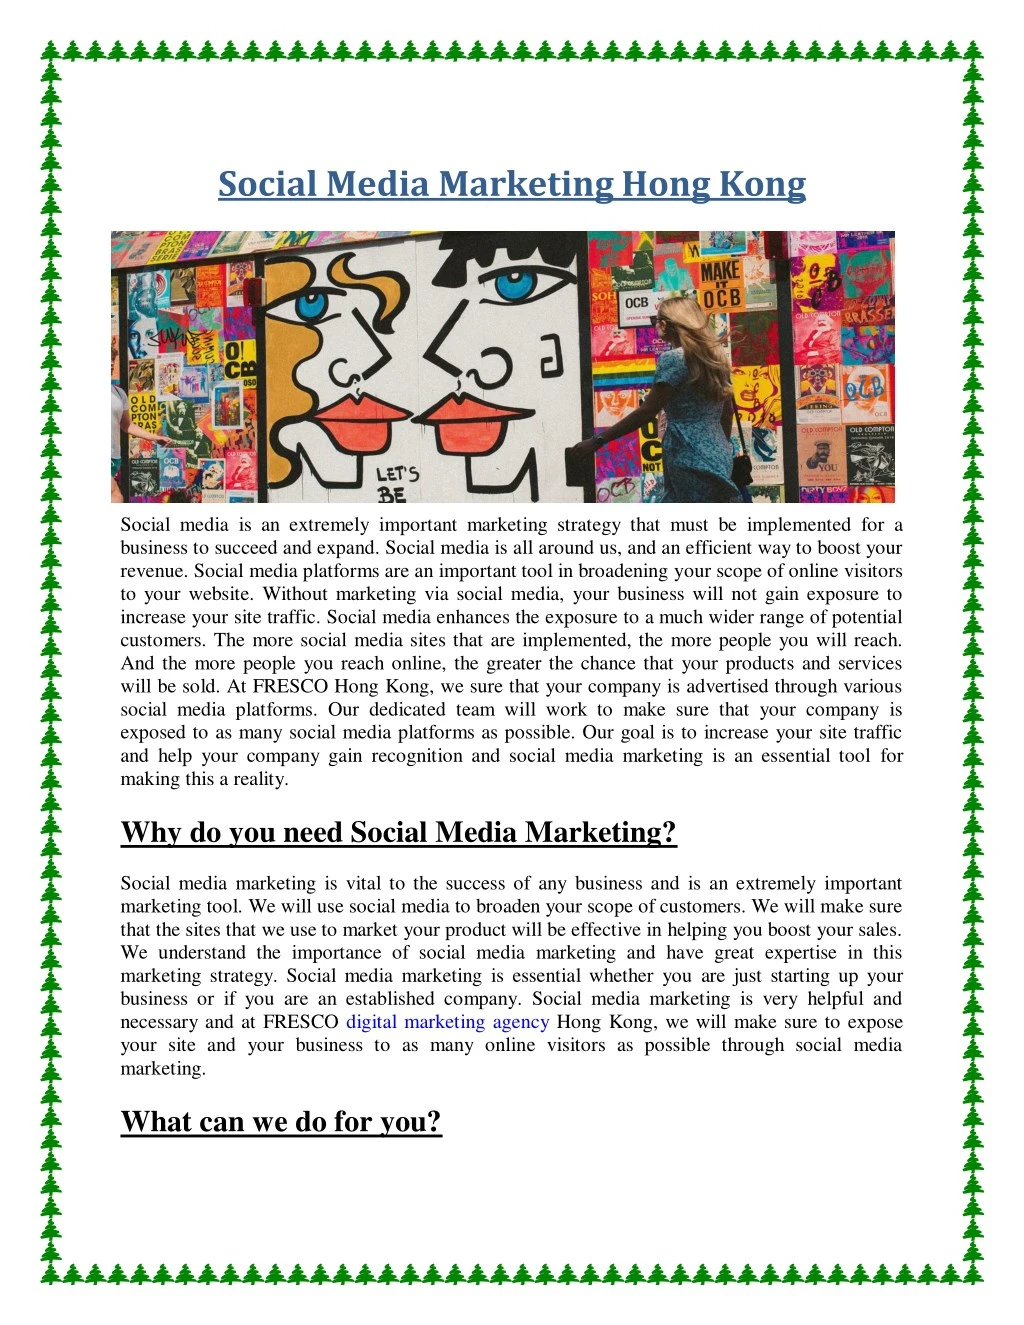 social media marketing hong kong